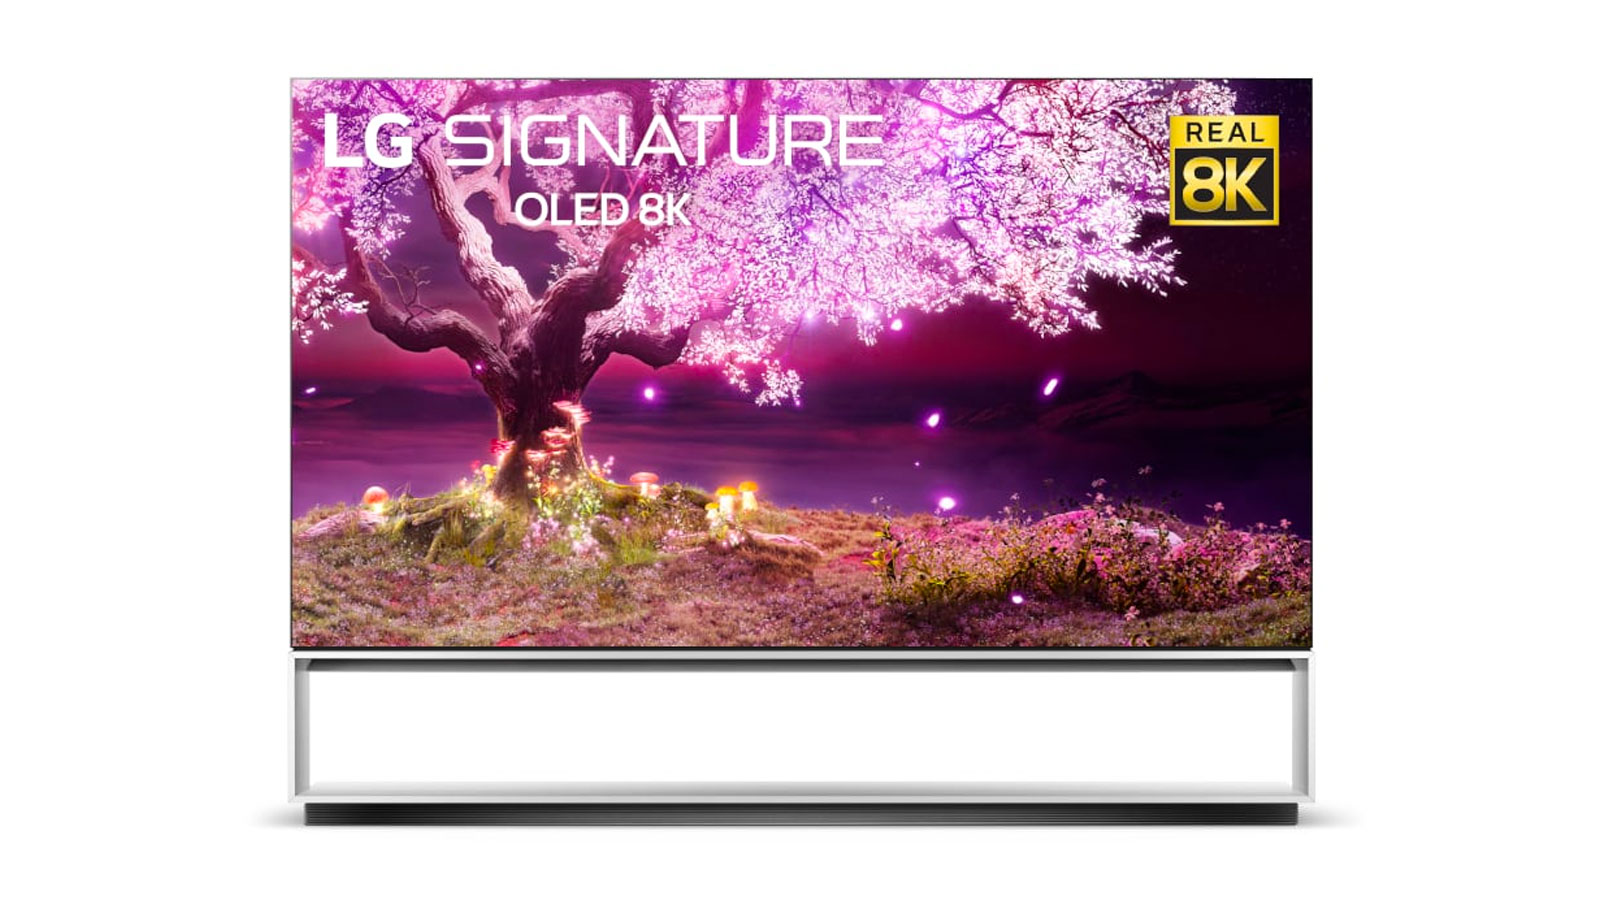 LG dévoile les prix et les disponibilités de ses téléviseurs OLED 2021